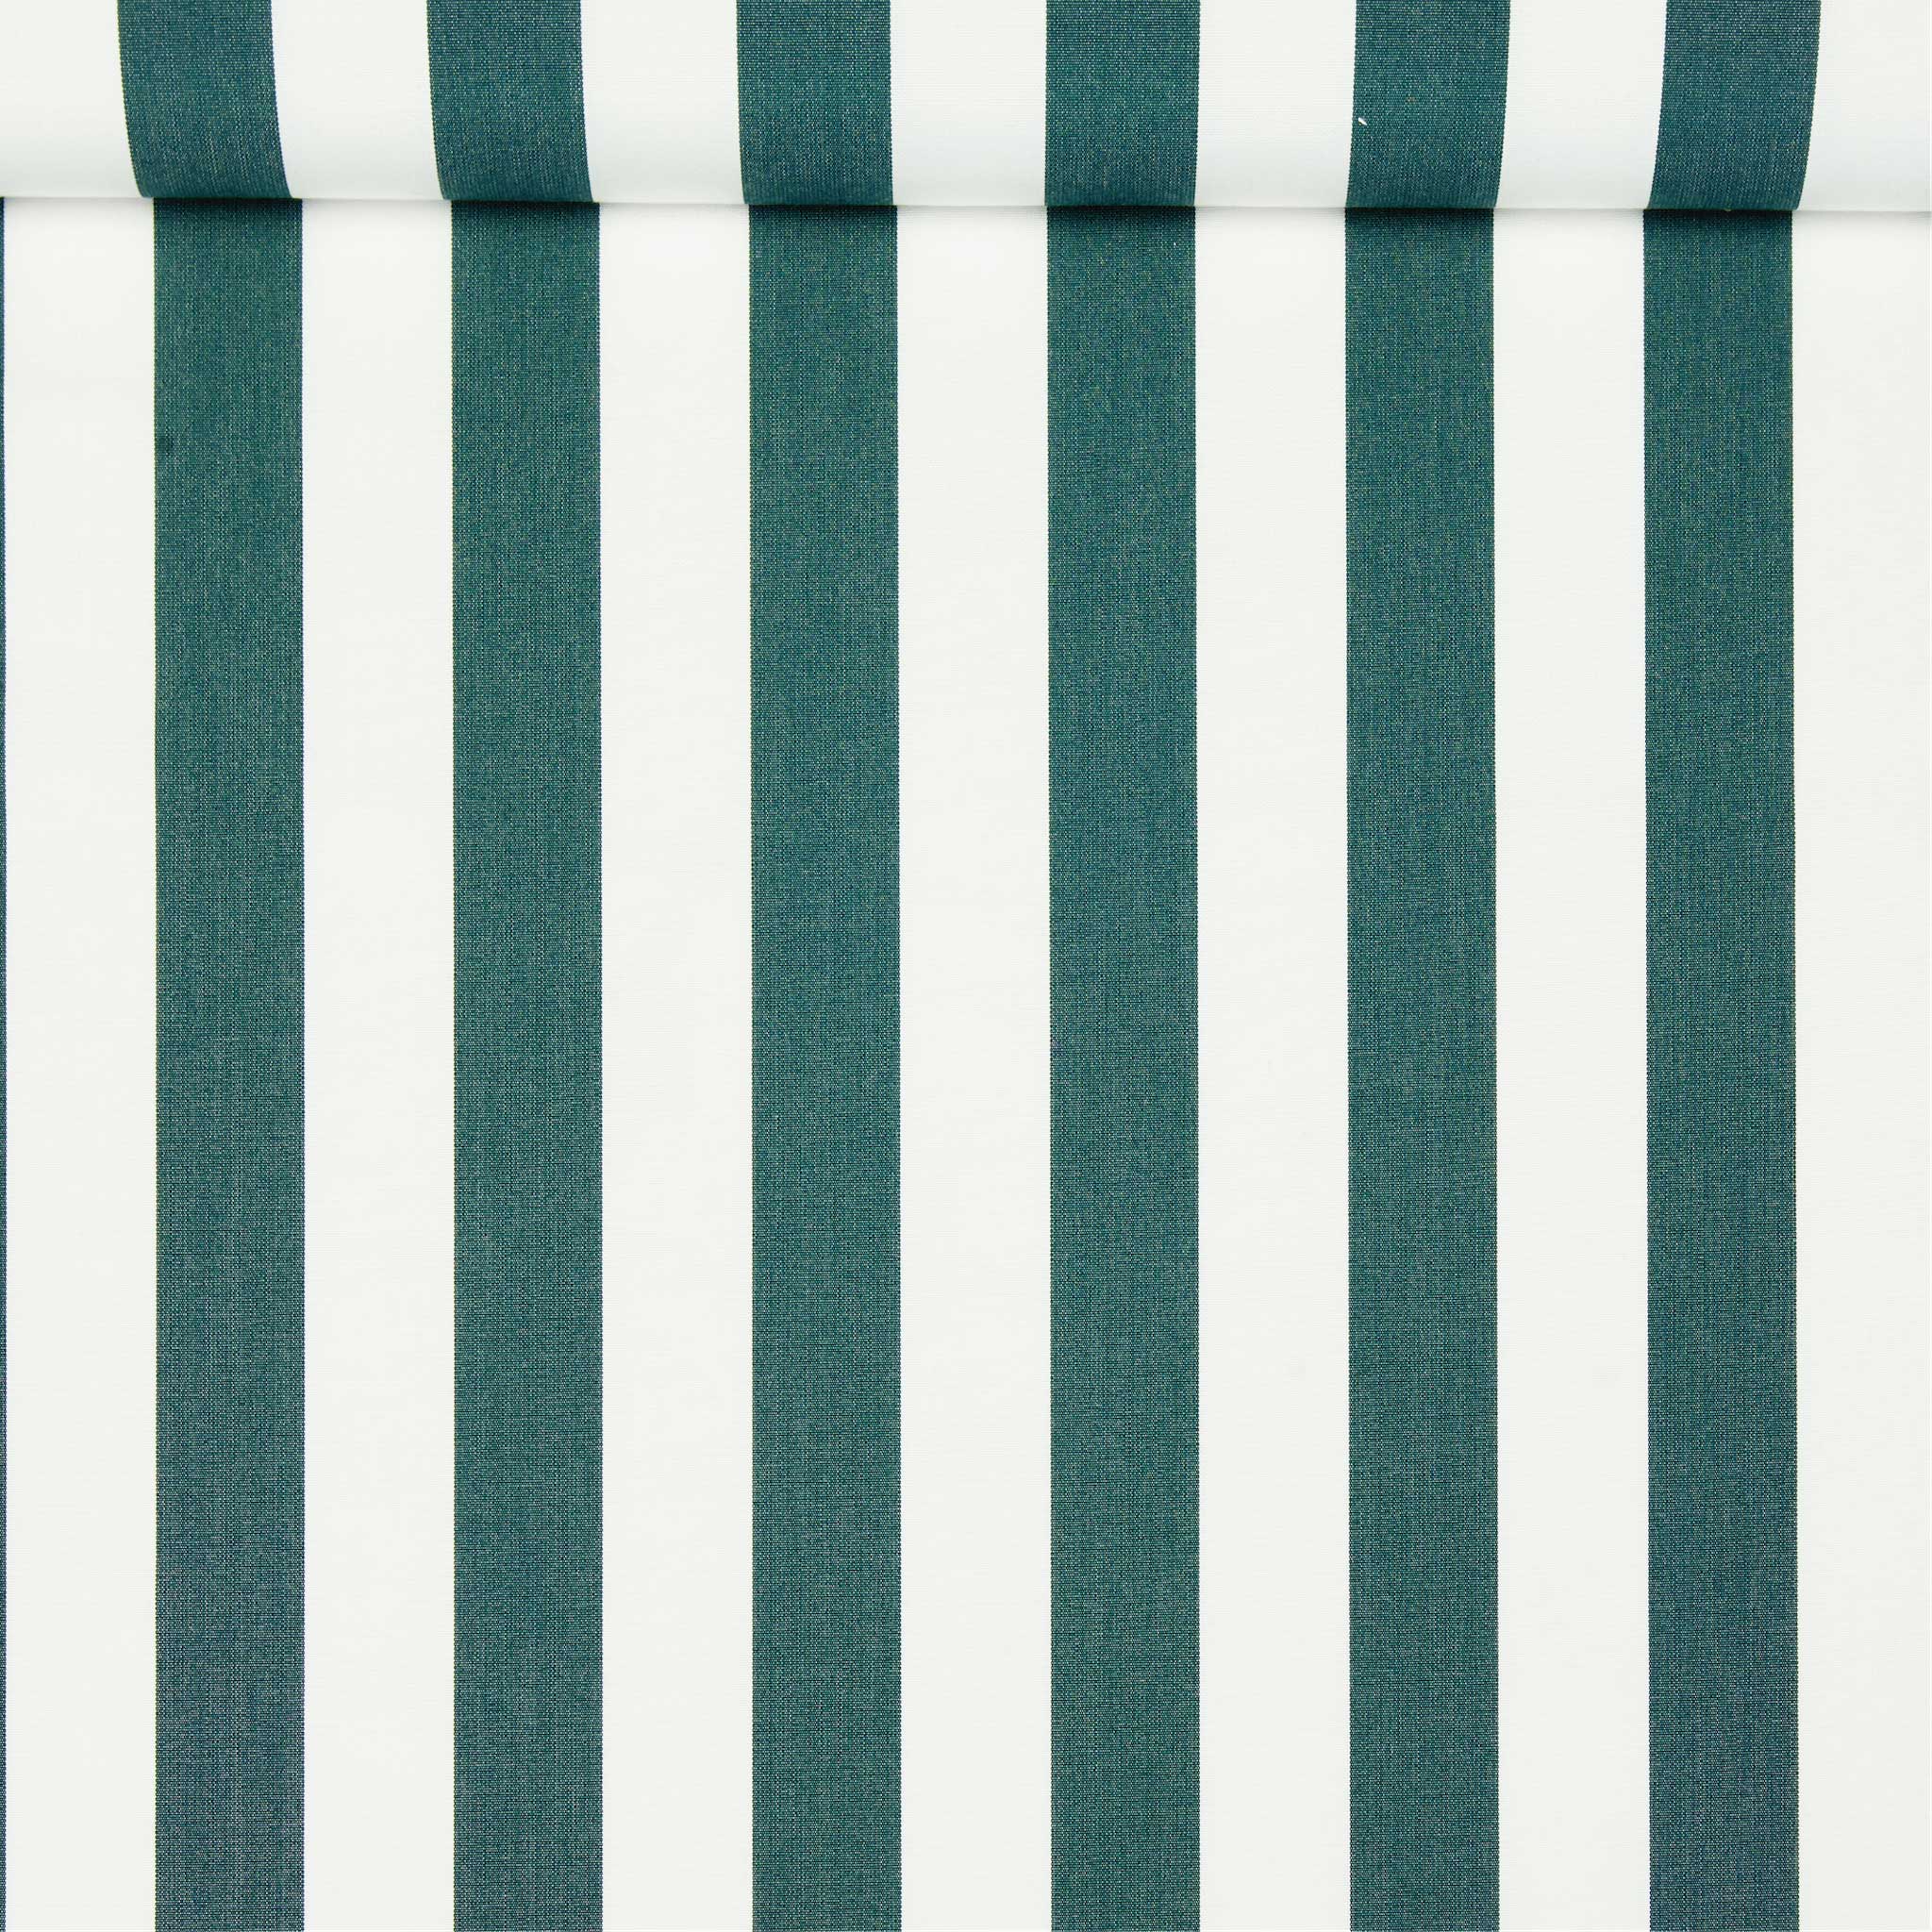 Tissu acrylique teint dans la masse, rayé vert et blanc, utilisé pour les flotteurs de piscine de luxe.